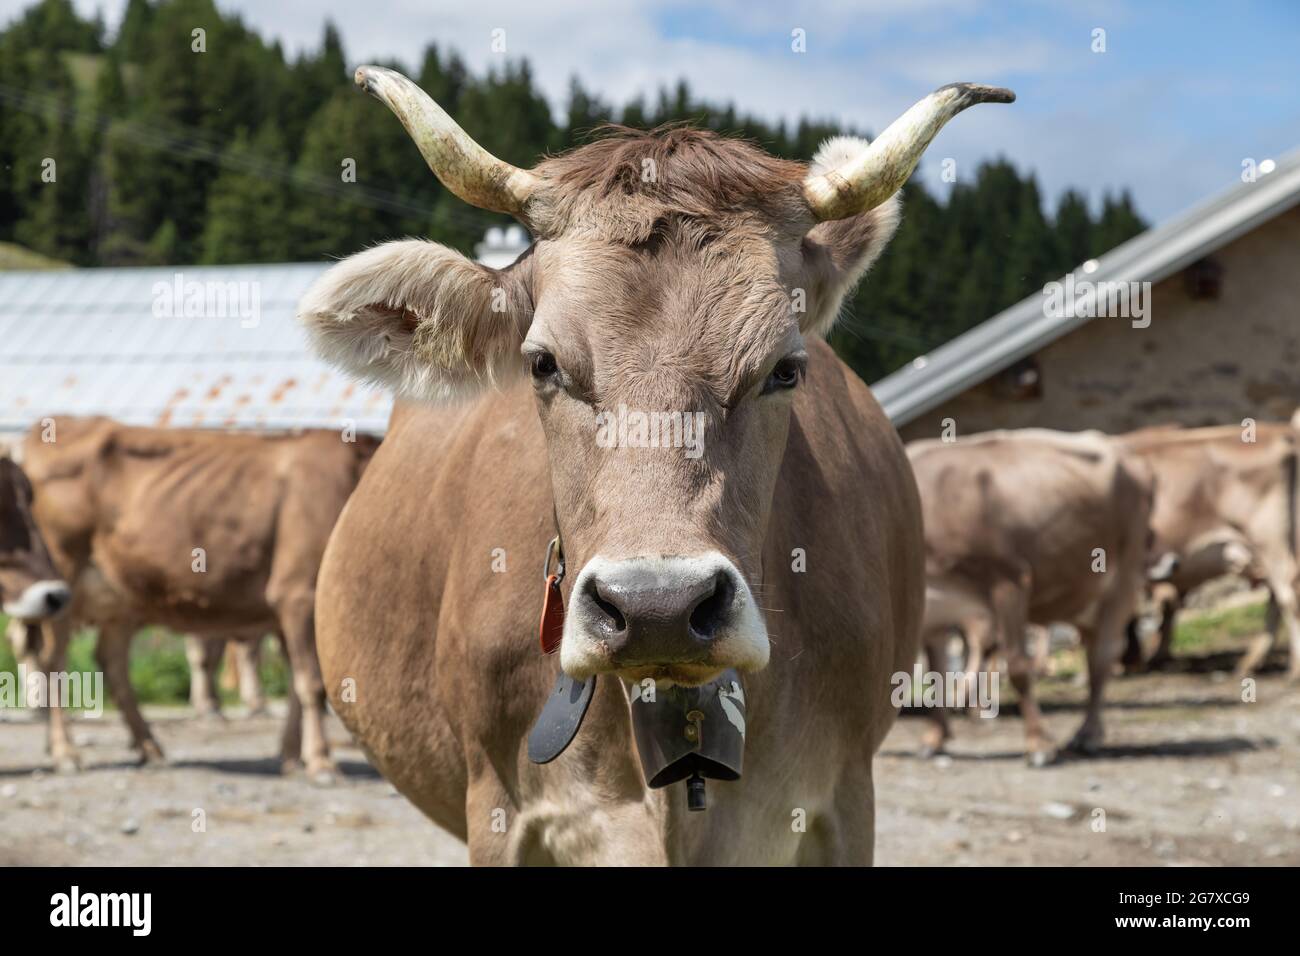 Kuh mit Hörner Foto & Bild  leica m11, fotos, natur Bilder auf